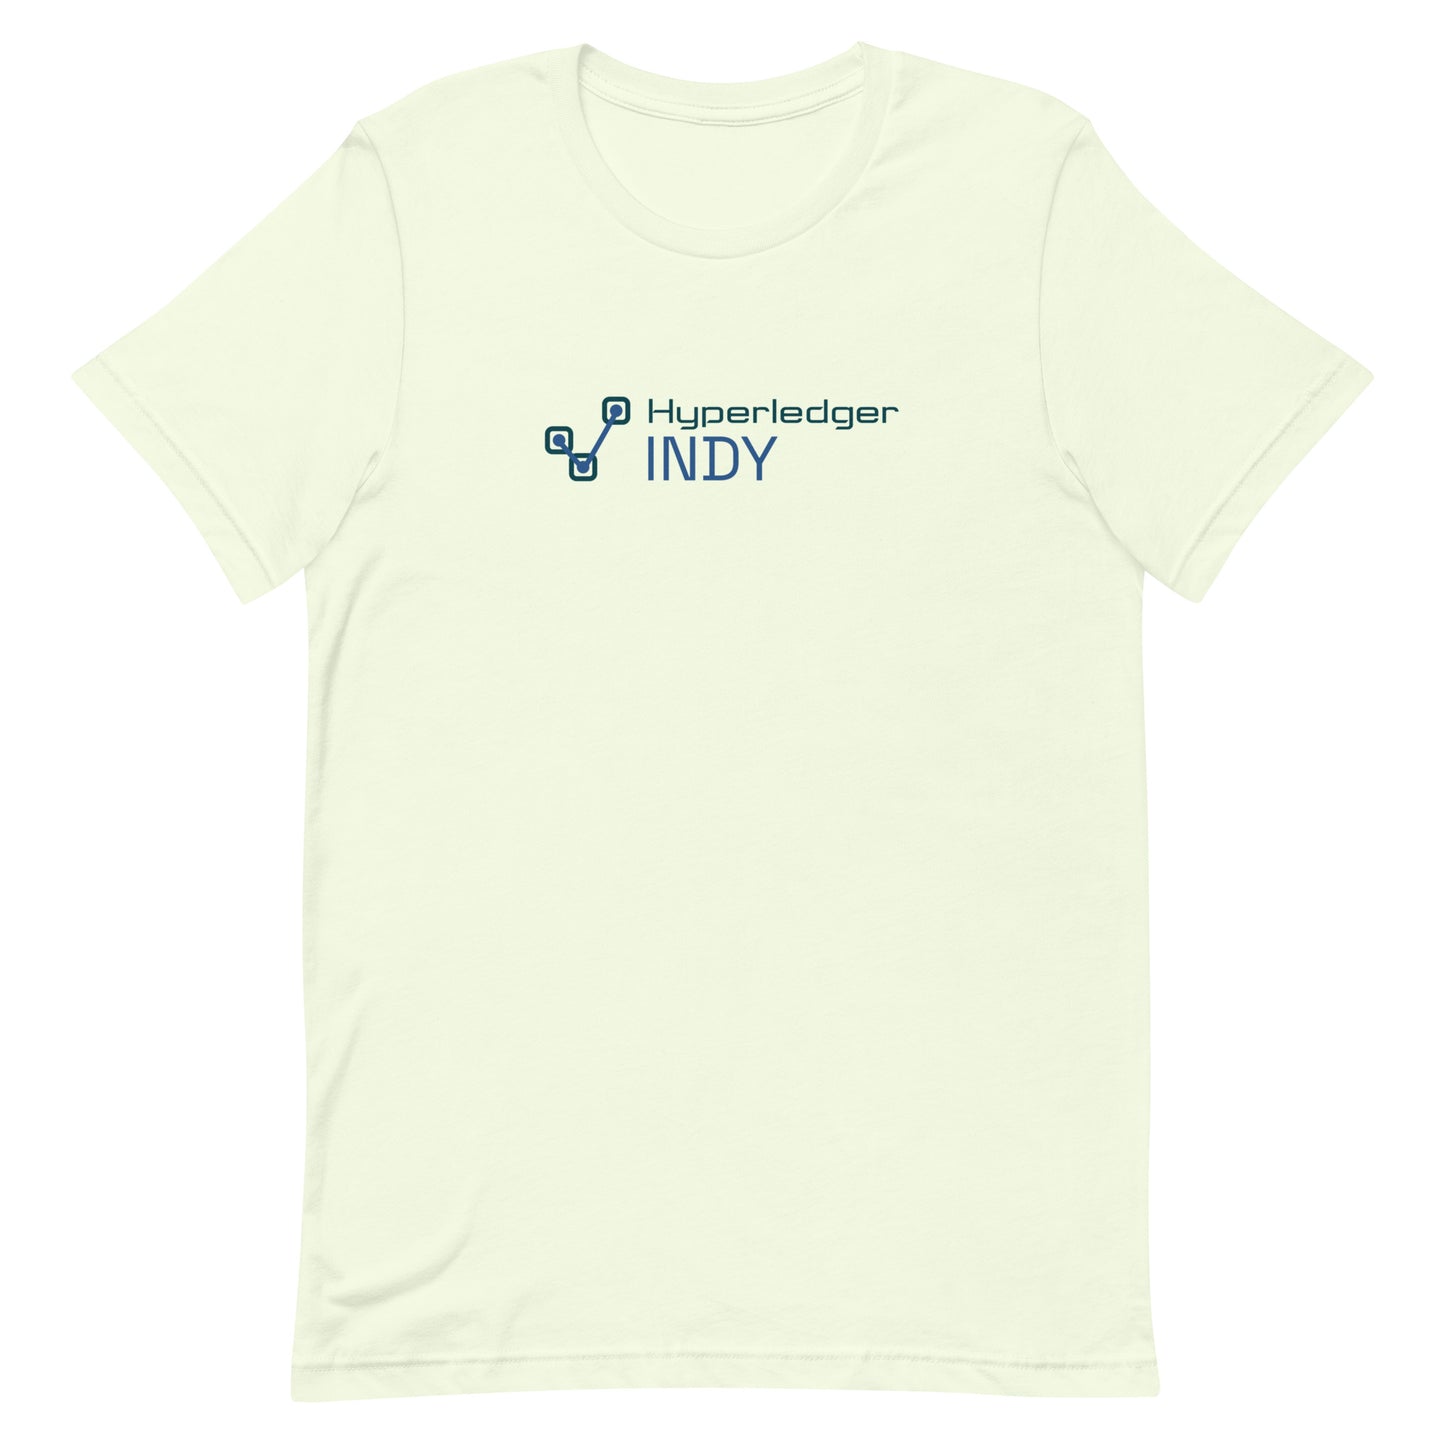 Hyperledger Indy